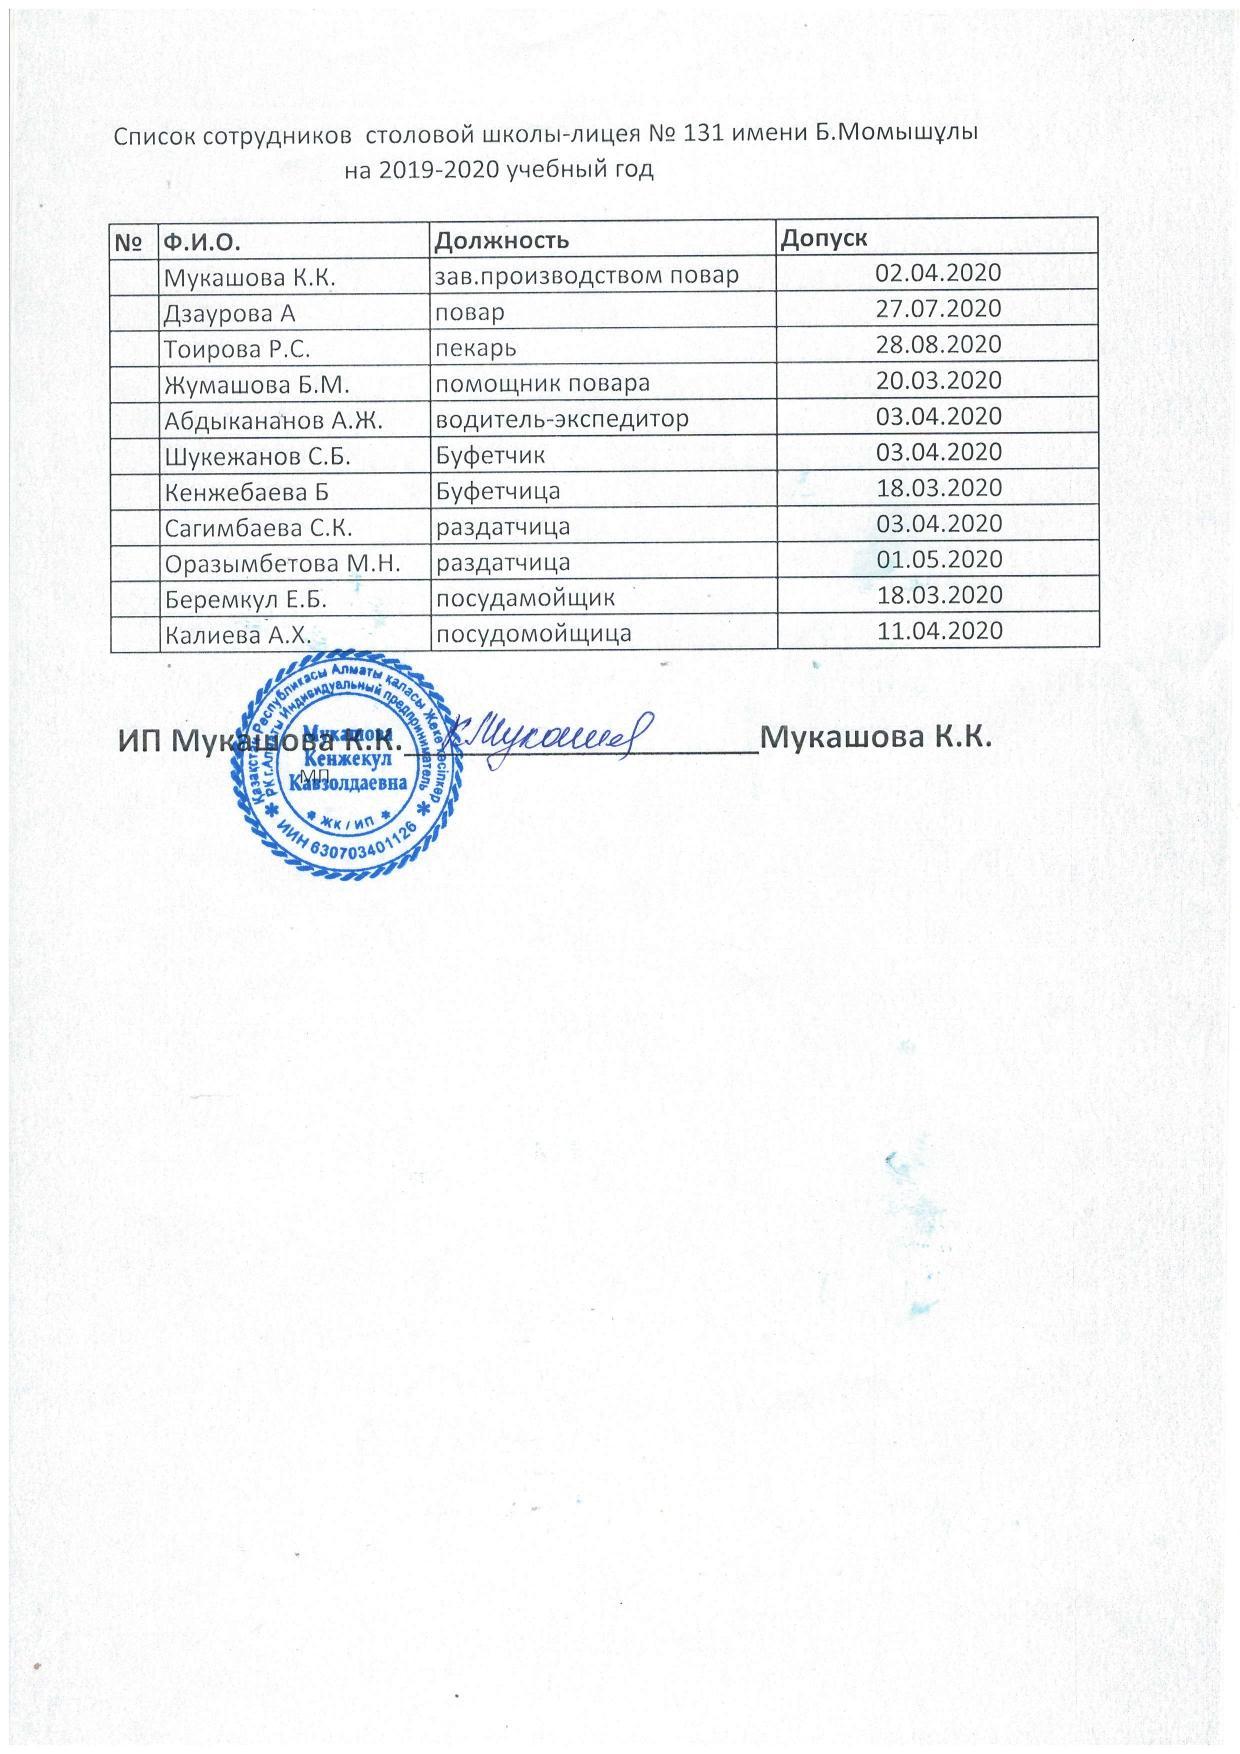 Список сотрудников столовой на 2019-20120